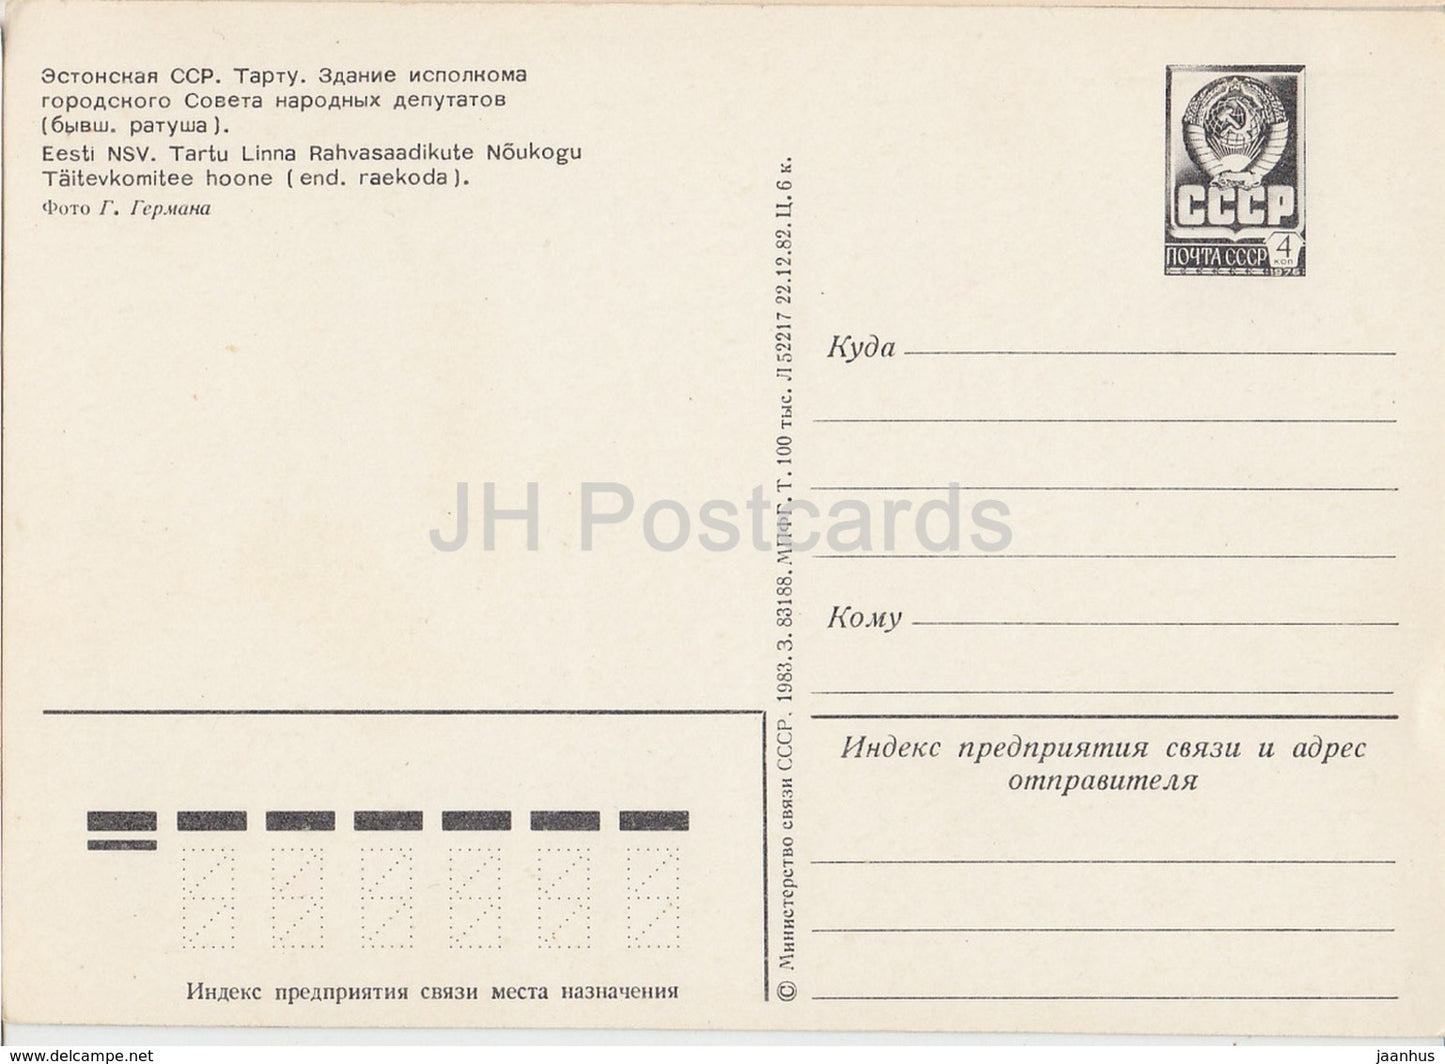 Tartu - Town Hall - Town Square - postal stationery - 1983 - Estonia USSR - unused